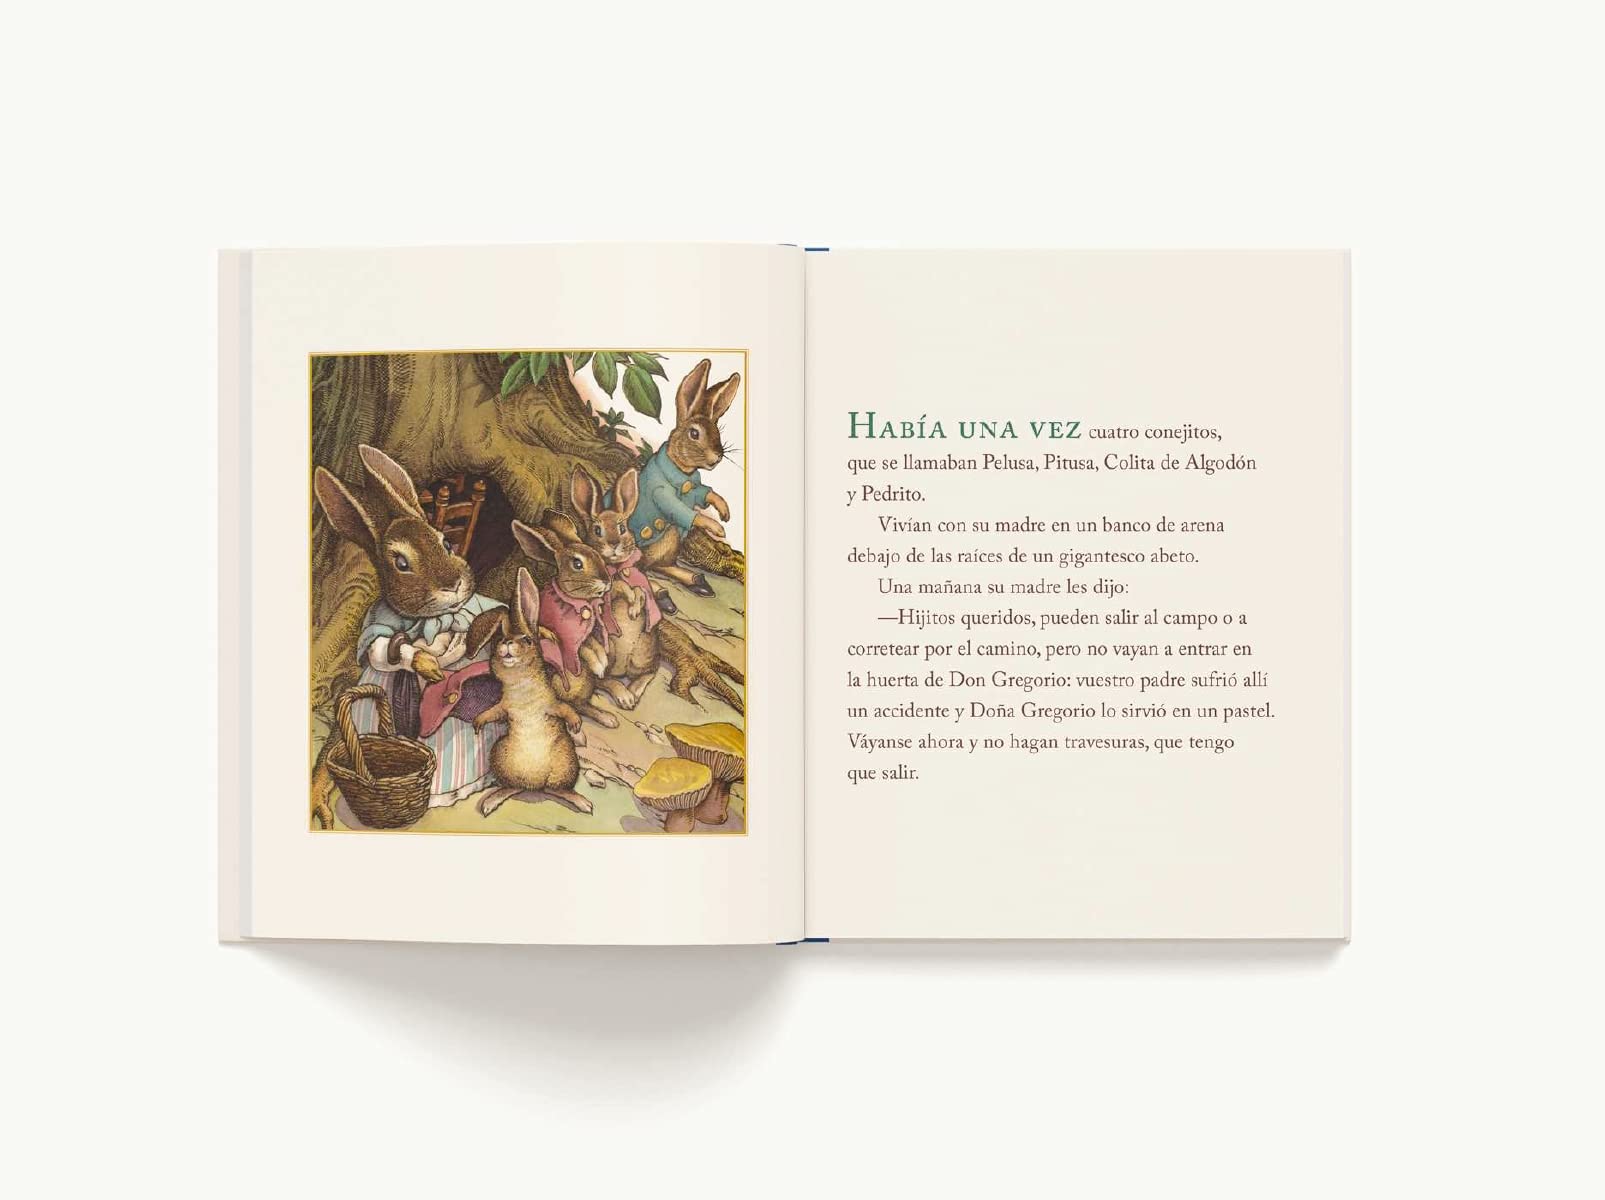 El Cuento Clásico De Pedrito, El Conejo Travieso (Little Apple Books) (Spanish Edition)